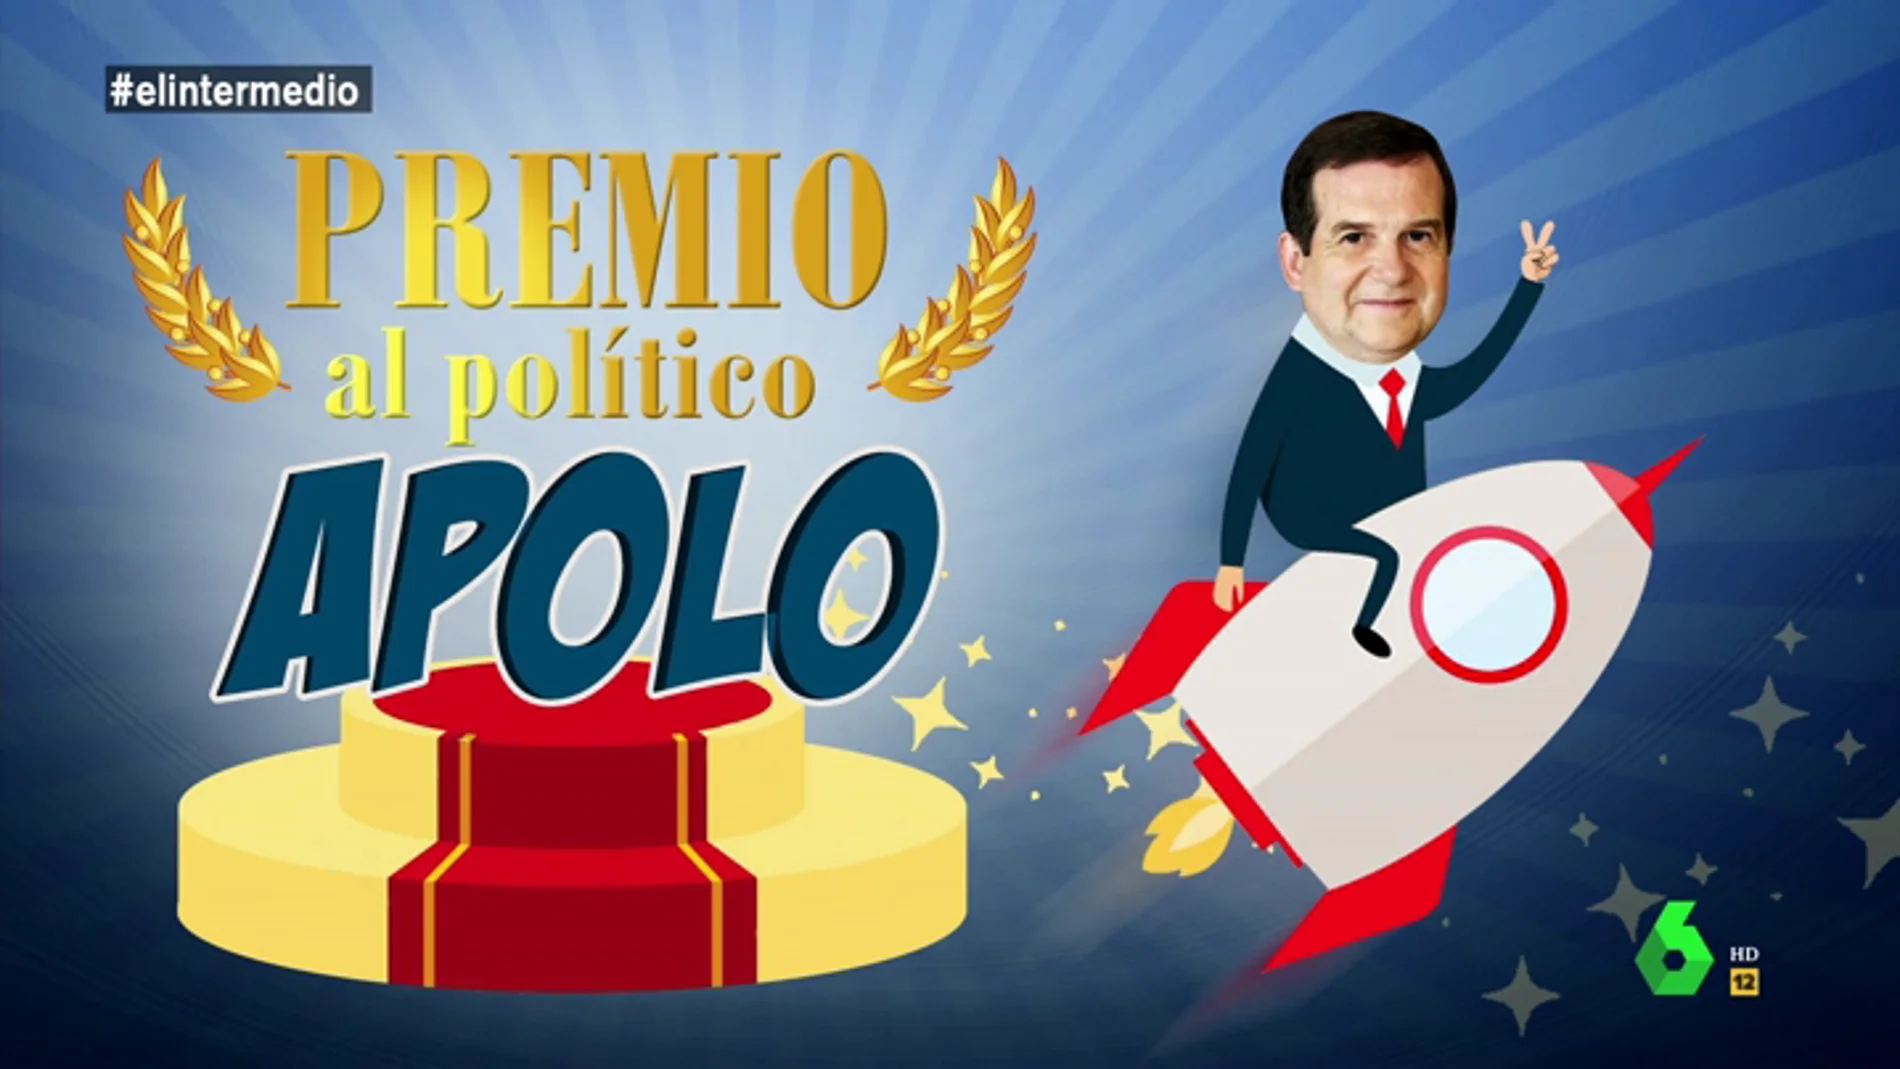 El Intermedio otorga al alcalde de Vigo el premio Apolo: "Se viene tan arriba que es capaz de salirse de la órbita"